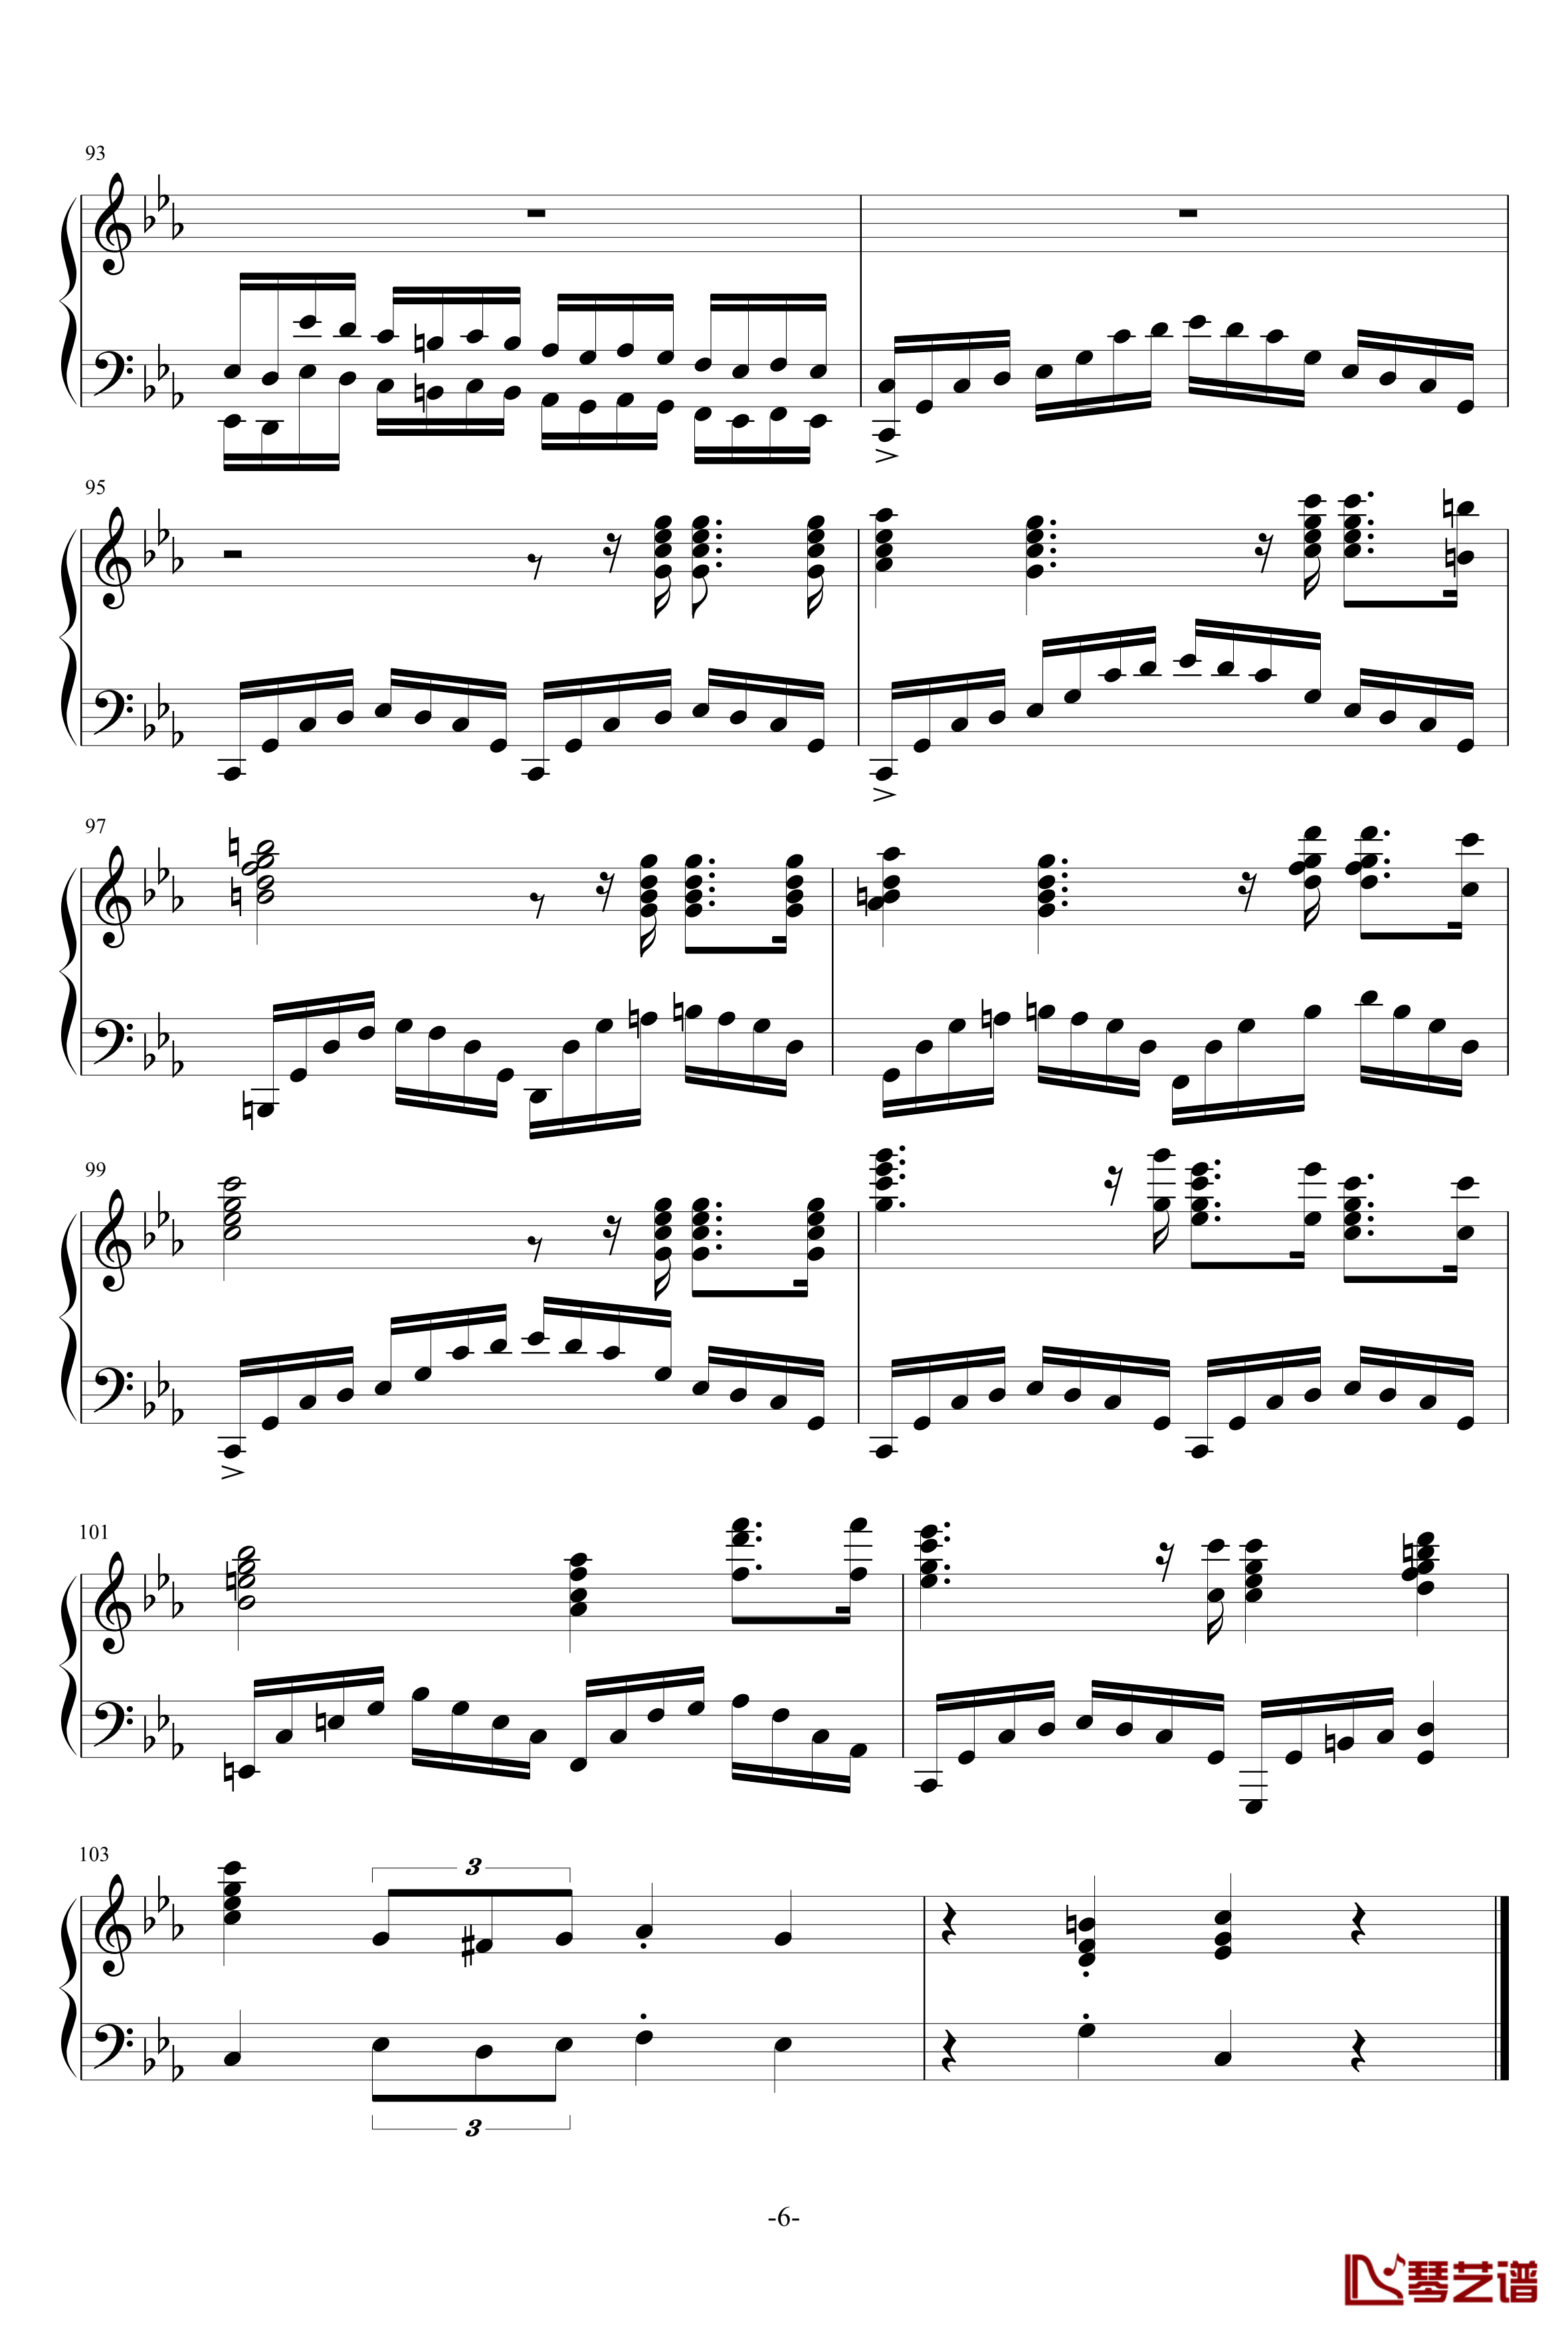 生日快乐钢琴谱-改进版-主题古典钢琴串烧-宋叫受6